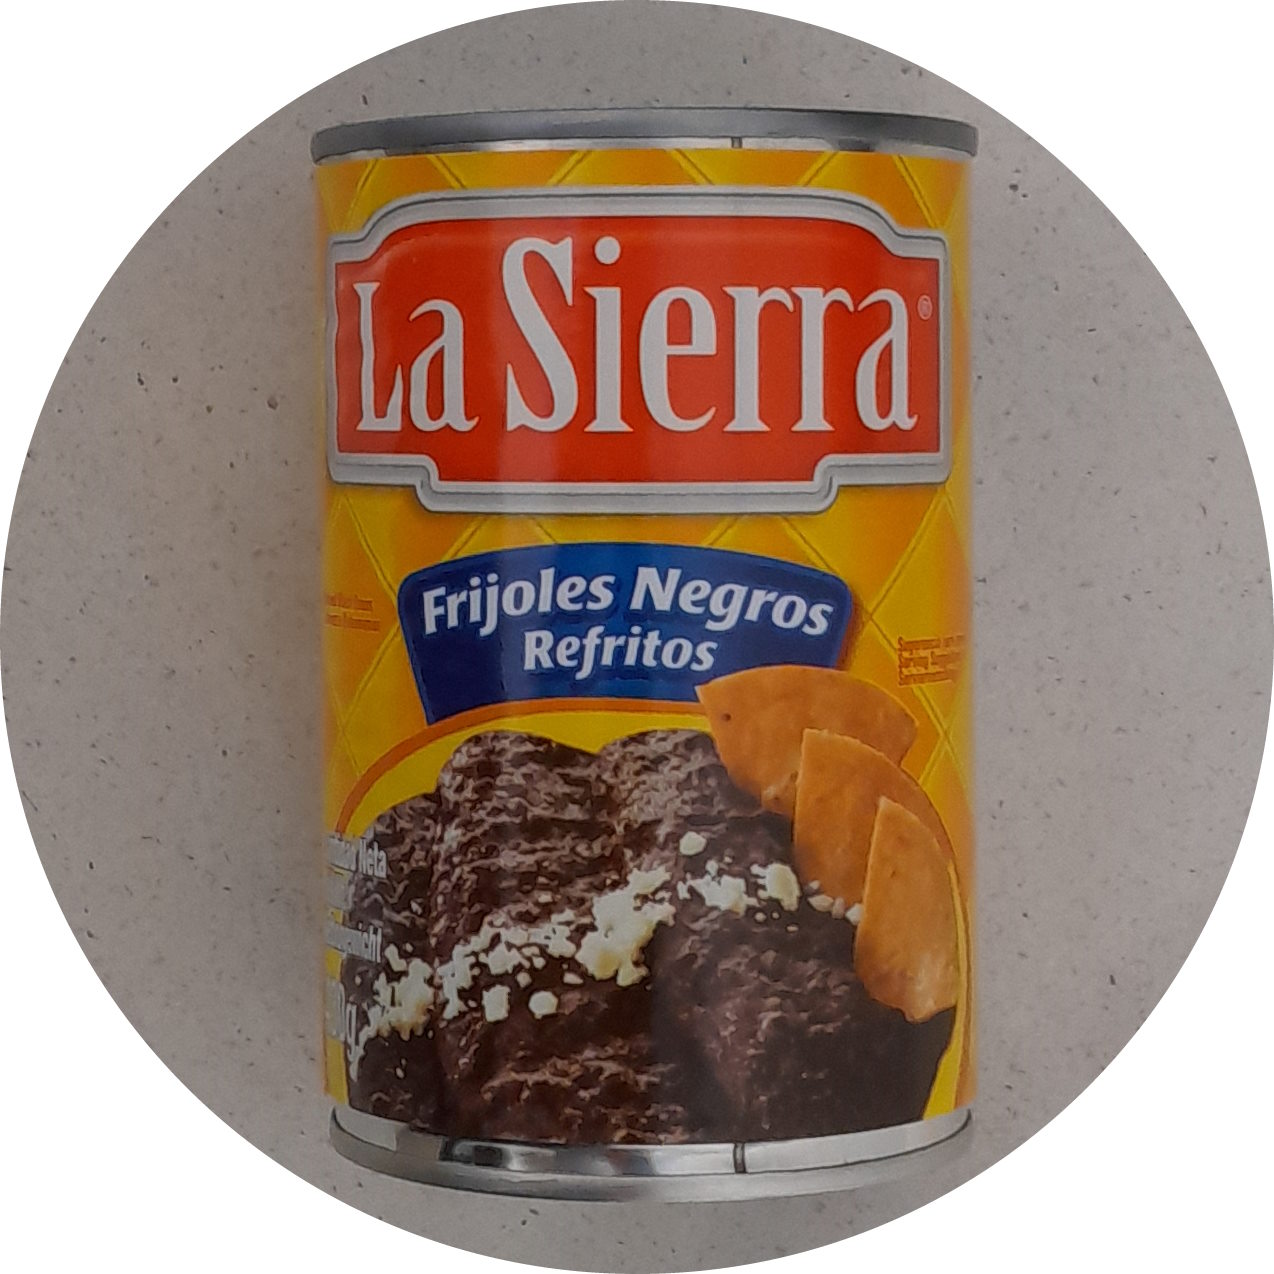 La Sierra Frijoles Negros Refritos 430g